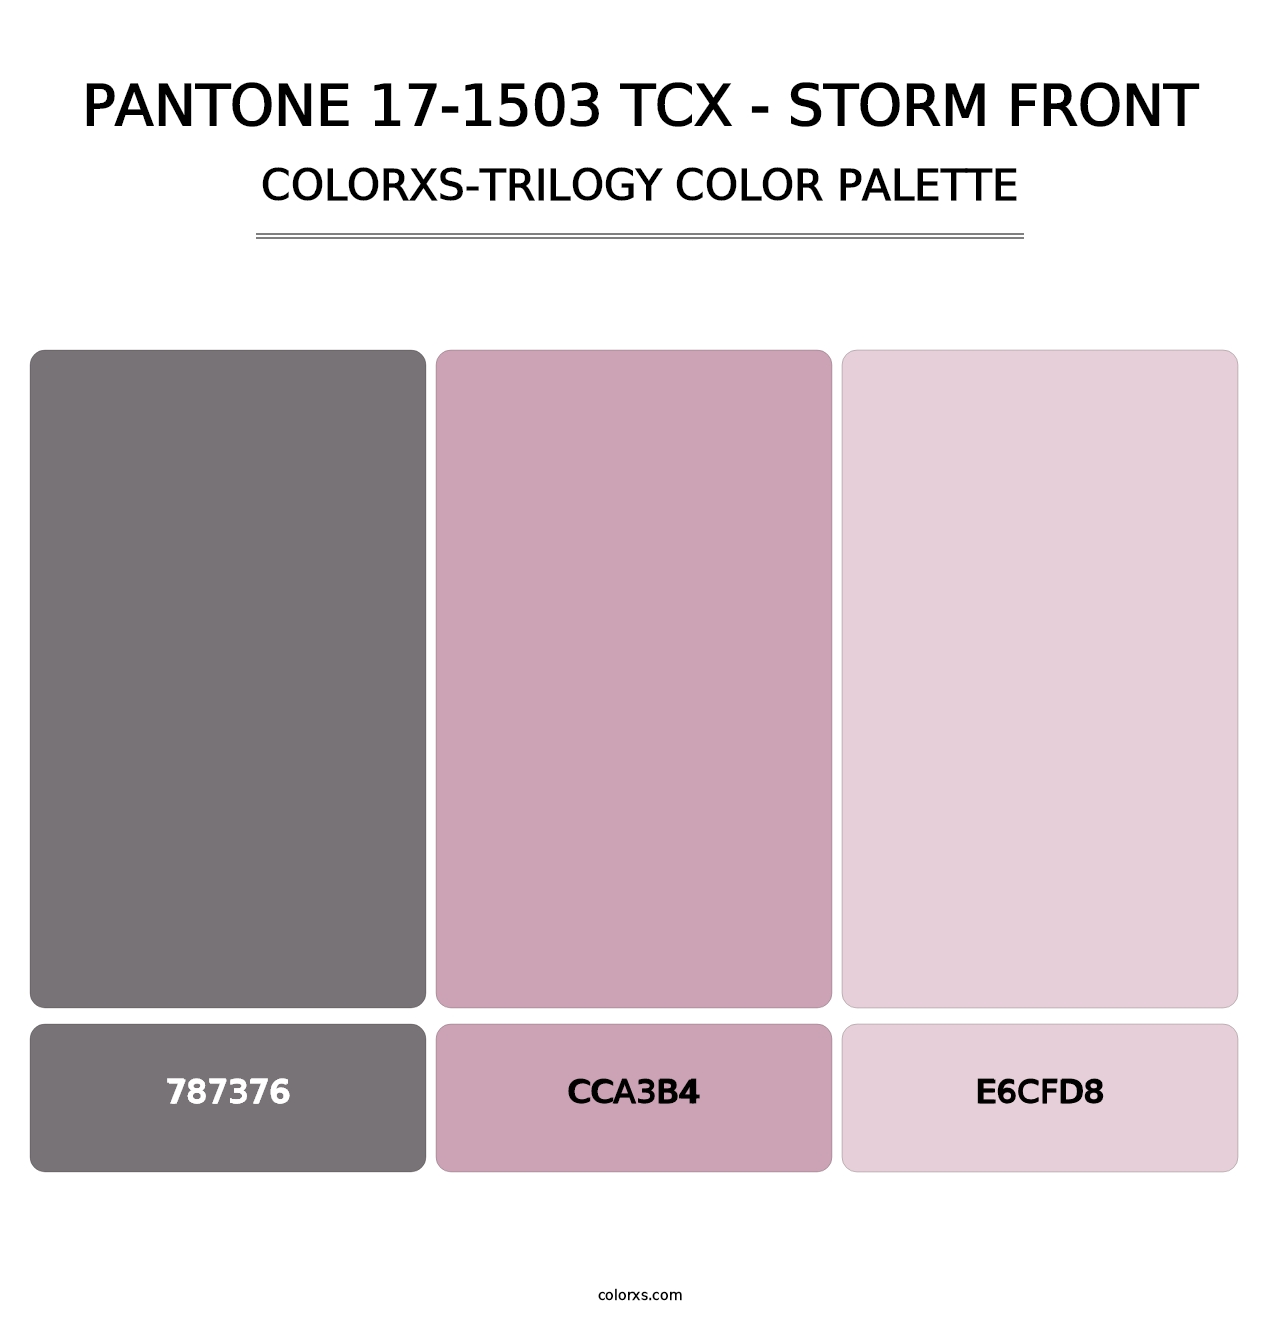 PANTONE 17-1503 TCX - Storm Front - Colorxs Trilogy Palette